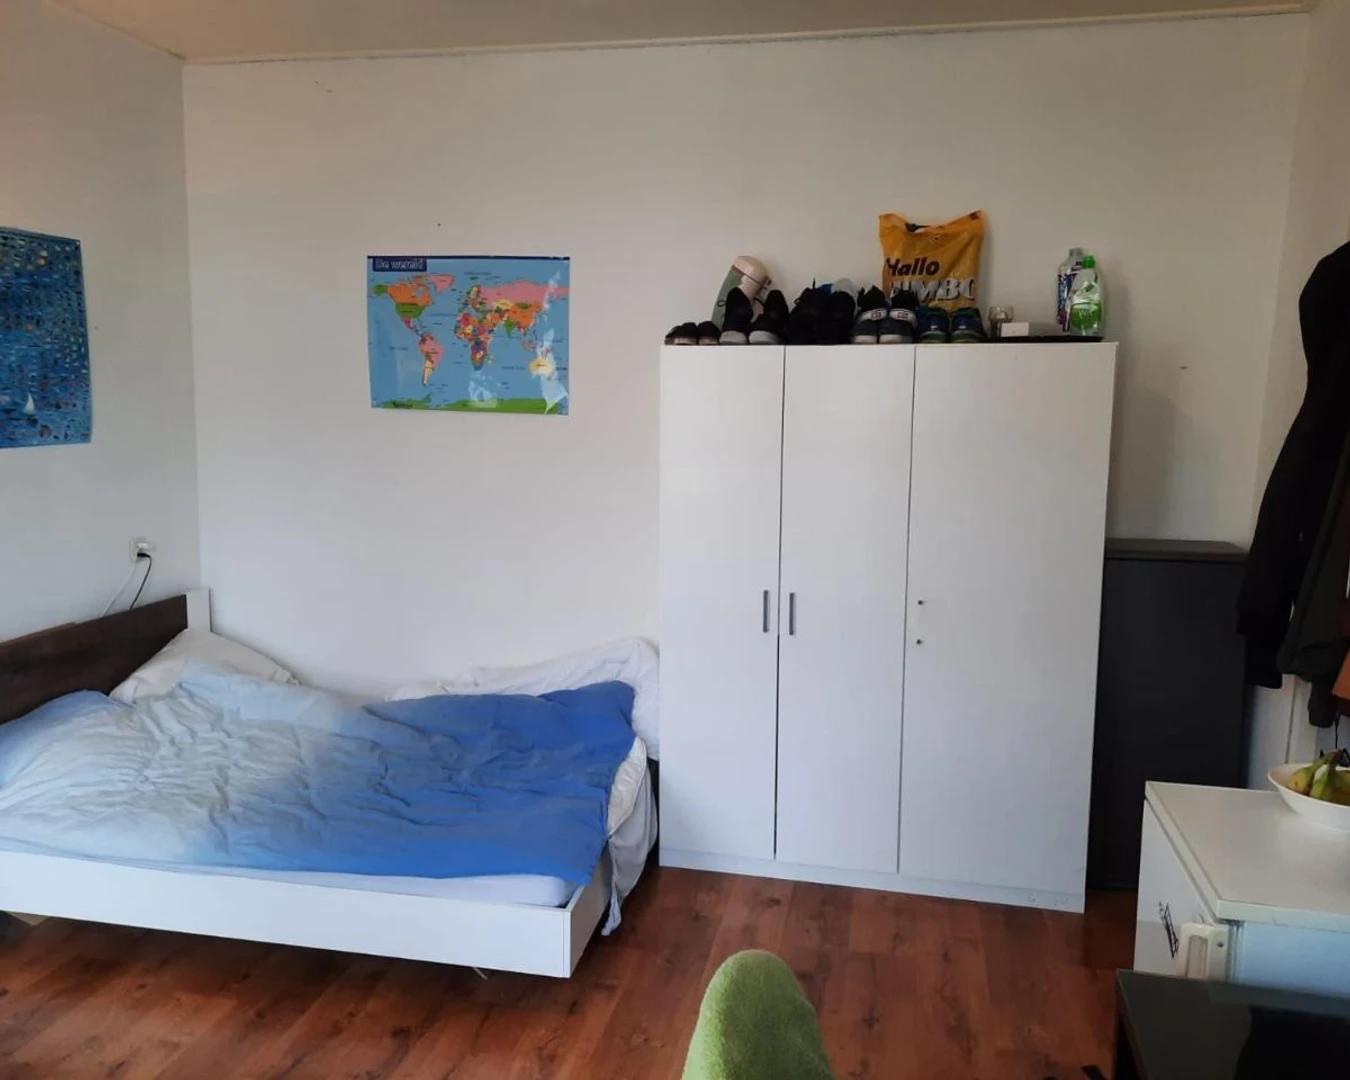 Alquiler de habitación en piso compartido en leeuwarden